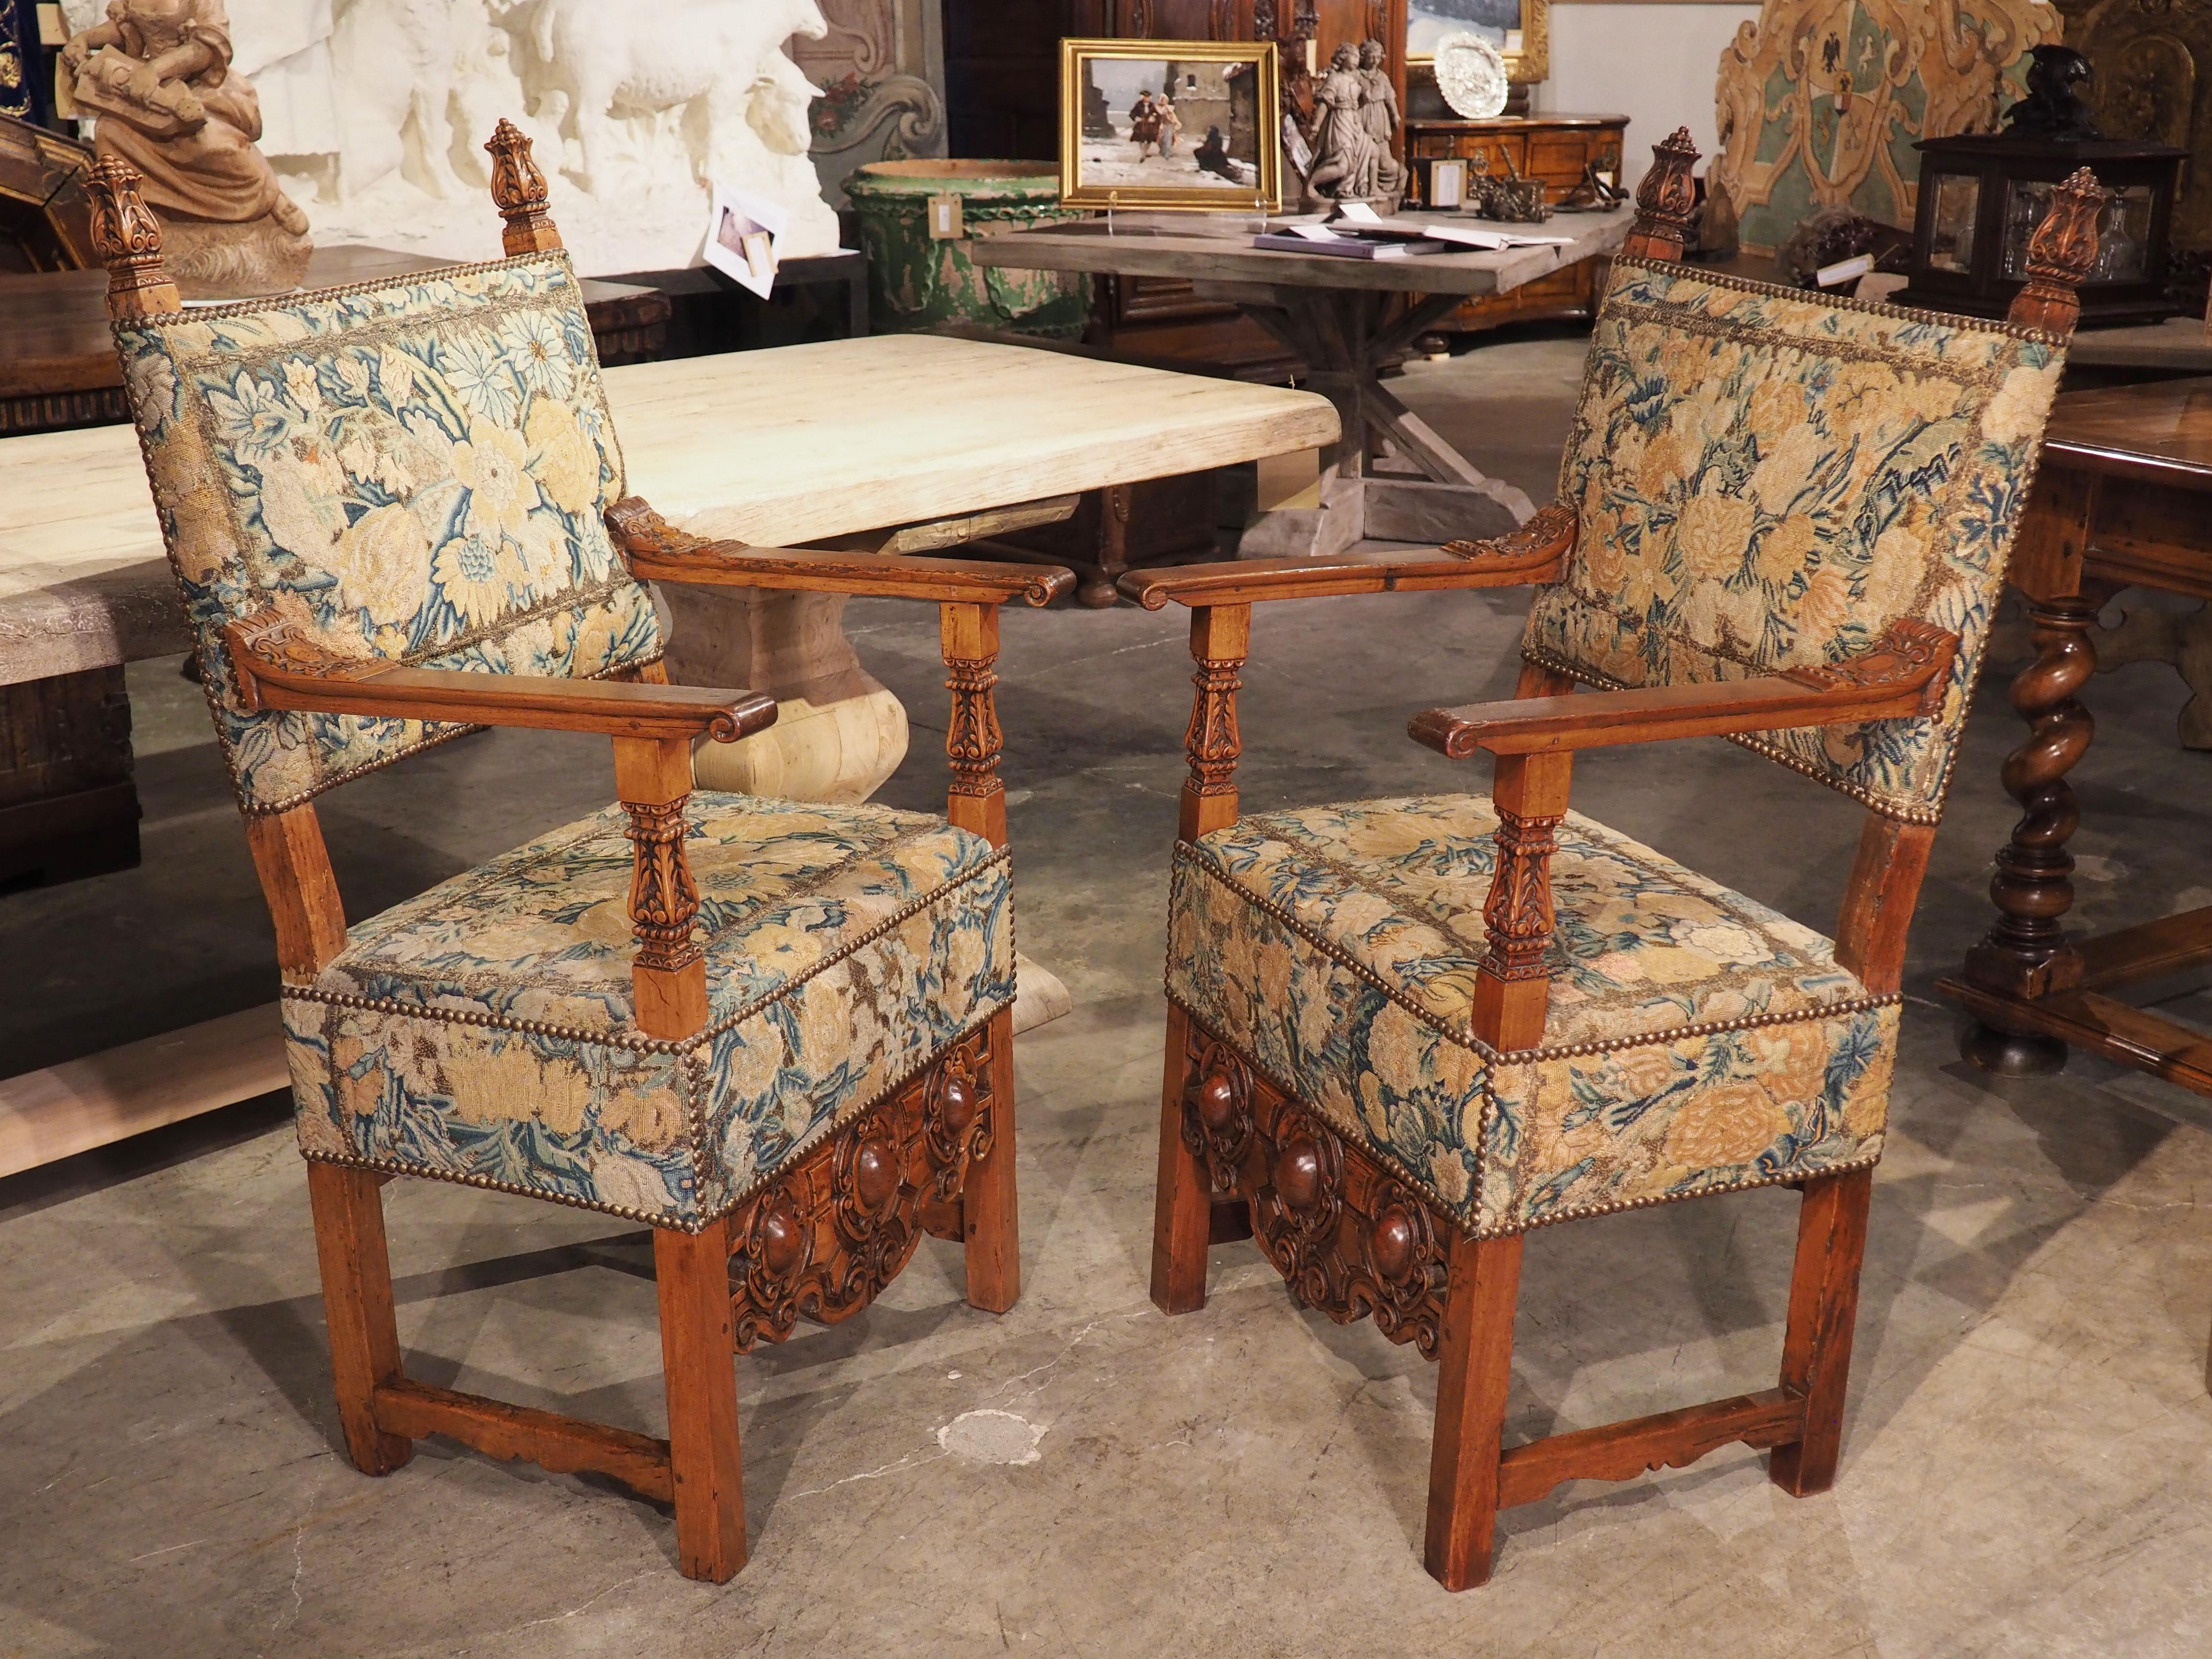 Dieses Paar eleganter Sessel aus Nussbaumholz wurde um 1600 in Italien von Hand geschnitzt und ist mit reichem Blattwerk und floraler Nadelspitze gepolstert. Die Rückenlehnen, Sitze und Schürzen der Stühle sind mit einer Stickerei mit grünen,